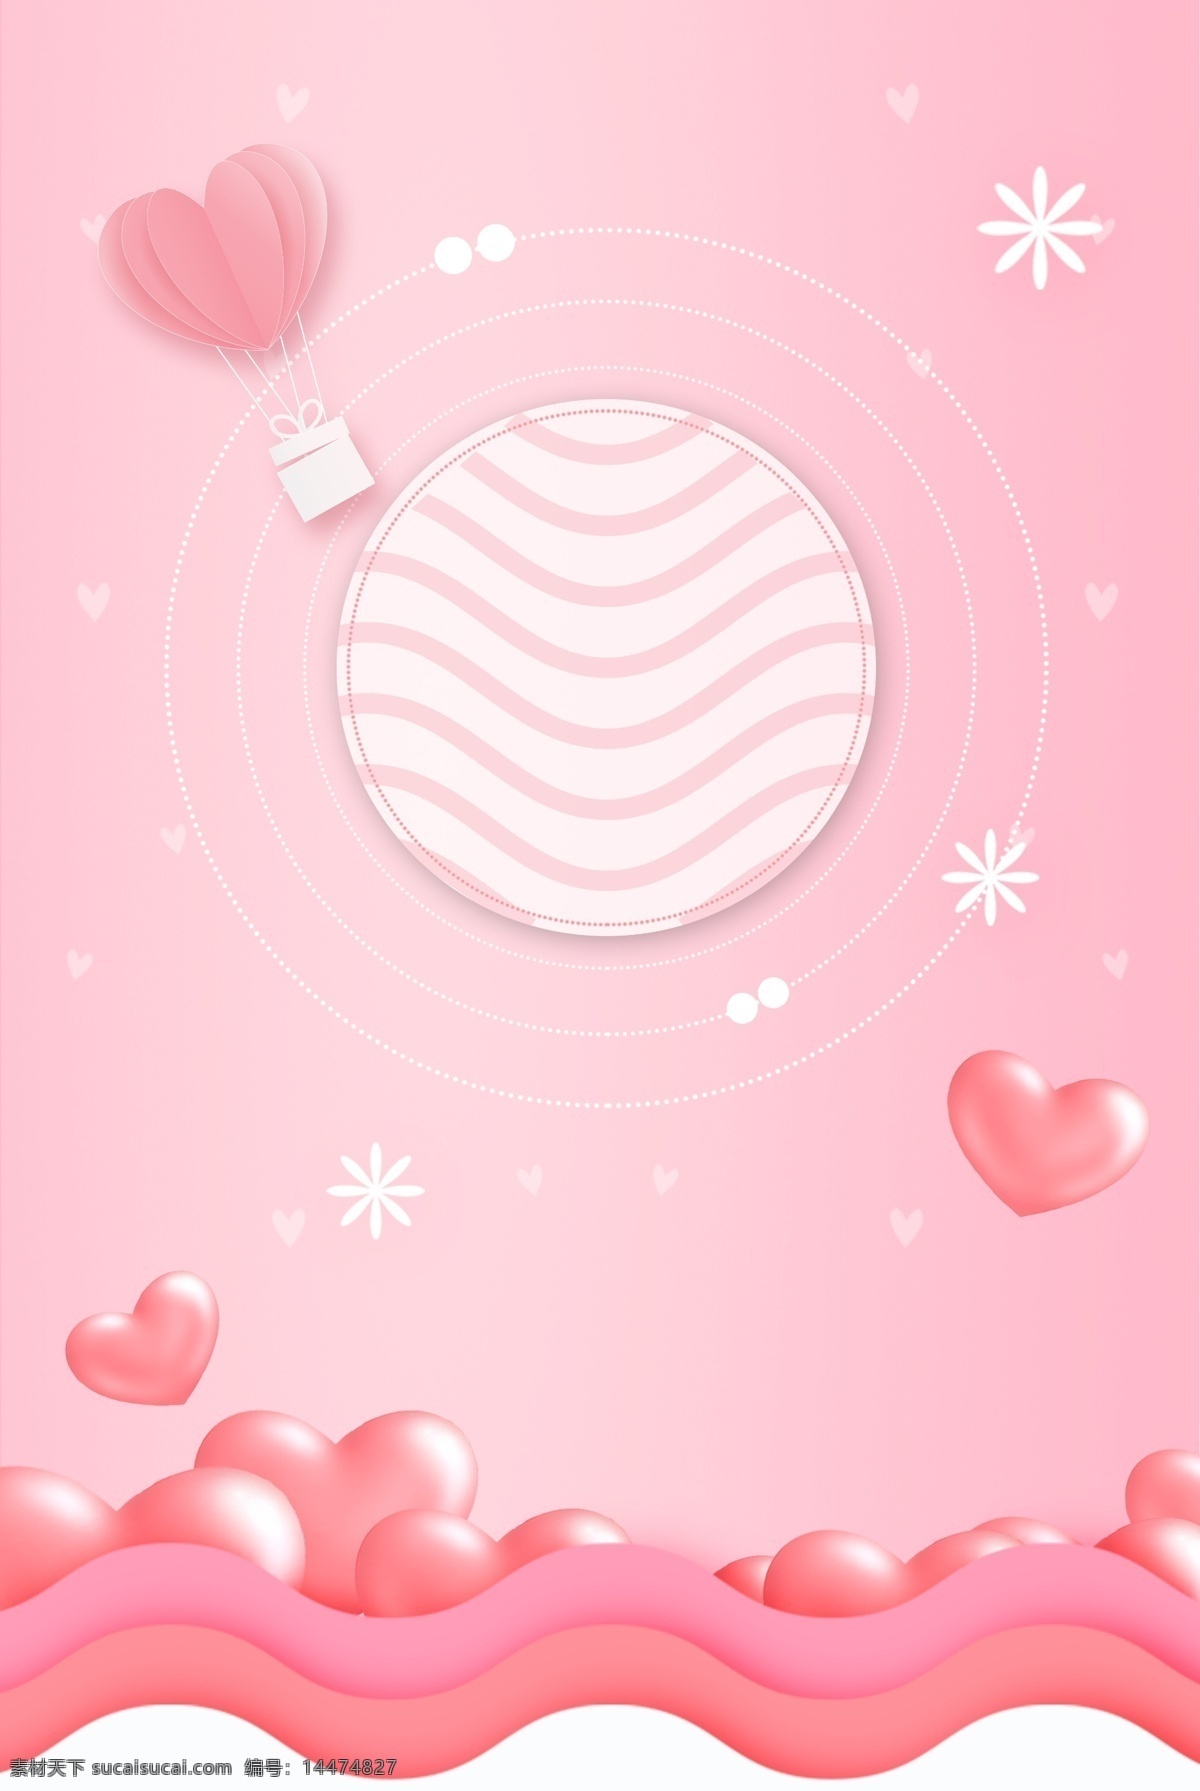 520 情人节 粉色 浪漫 爱心 热气球 海报 为爱放价 网络 520表白节 告白 爱情 电商 爱心热气球